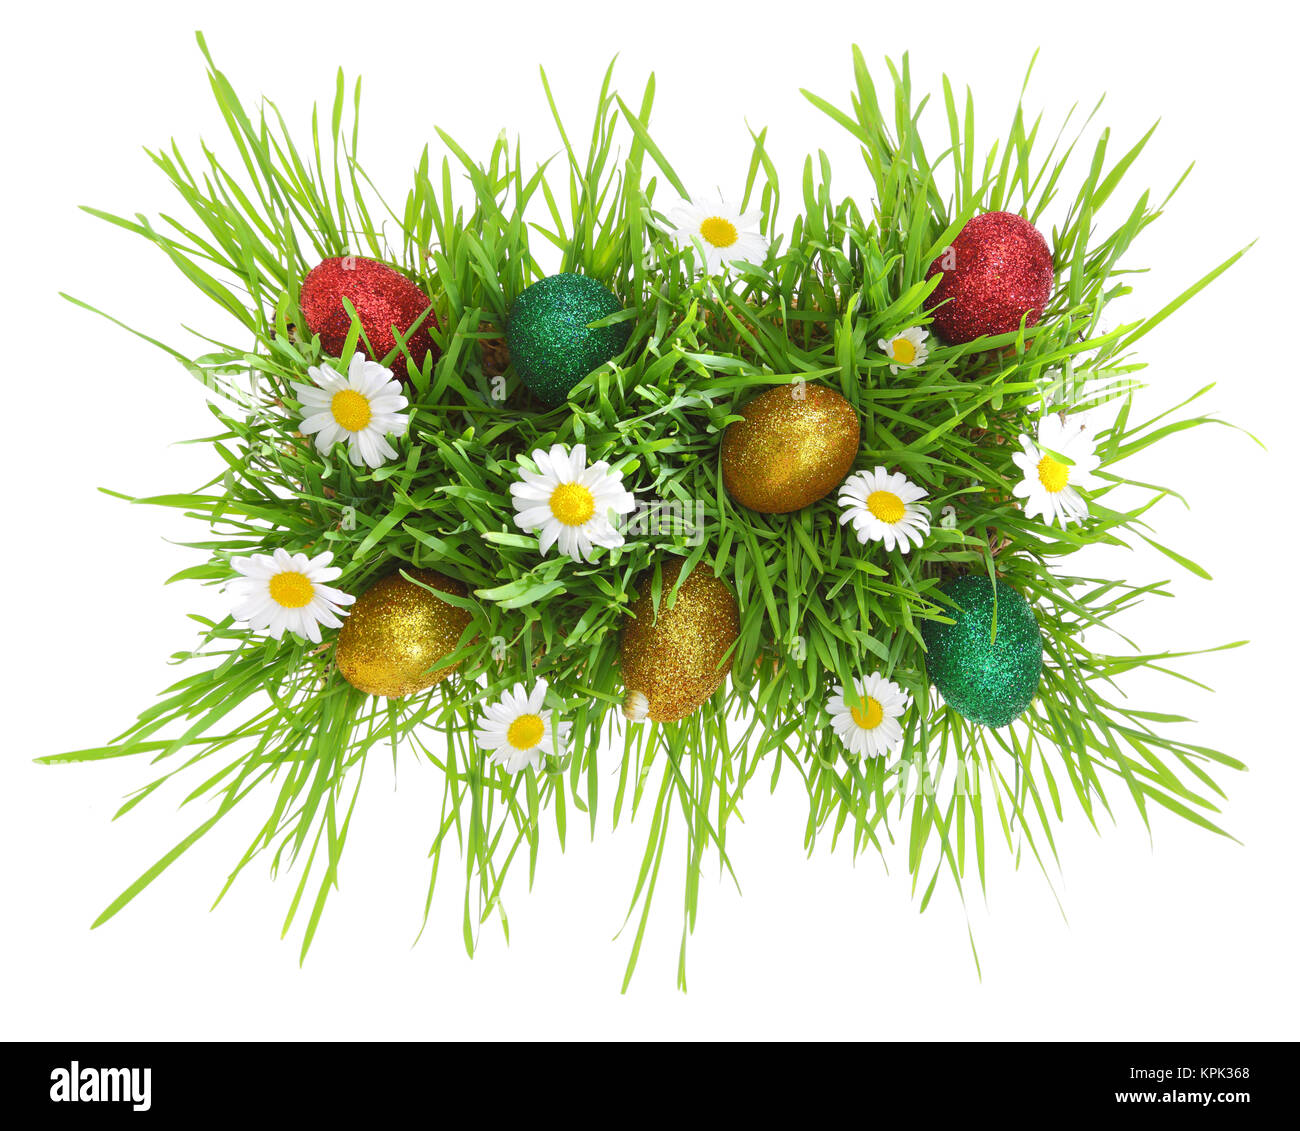 Les oeufs de Pâques, fleurs et grass isolated on white Banque D'Images